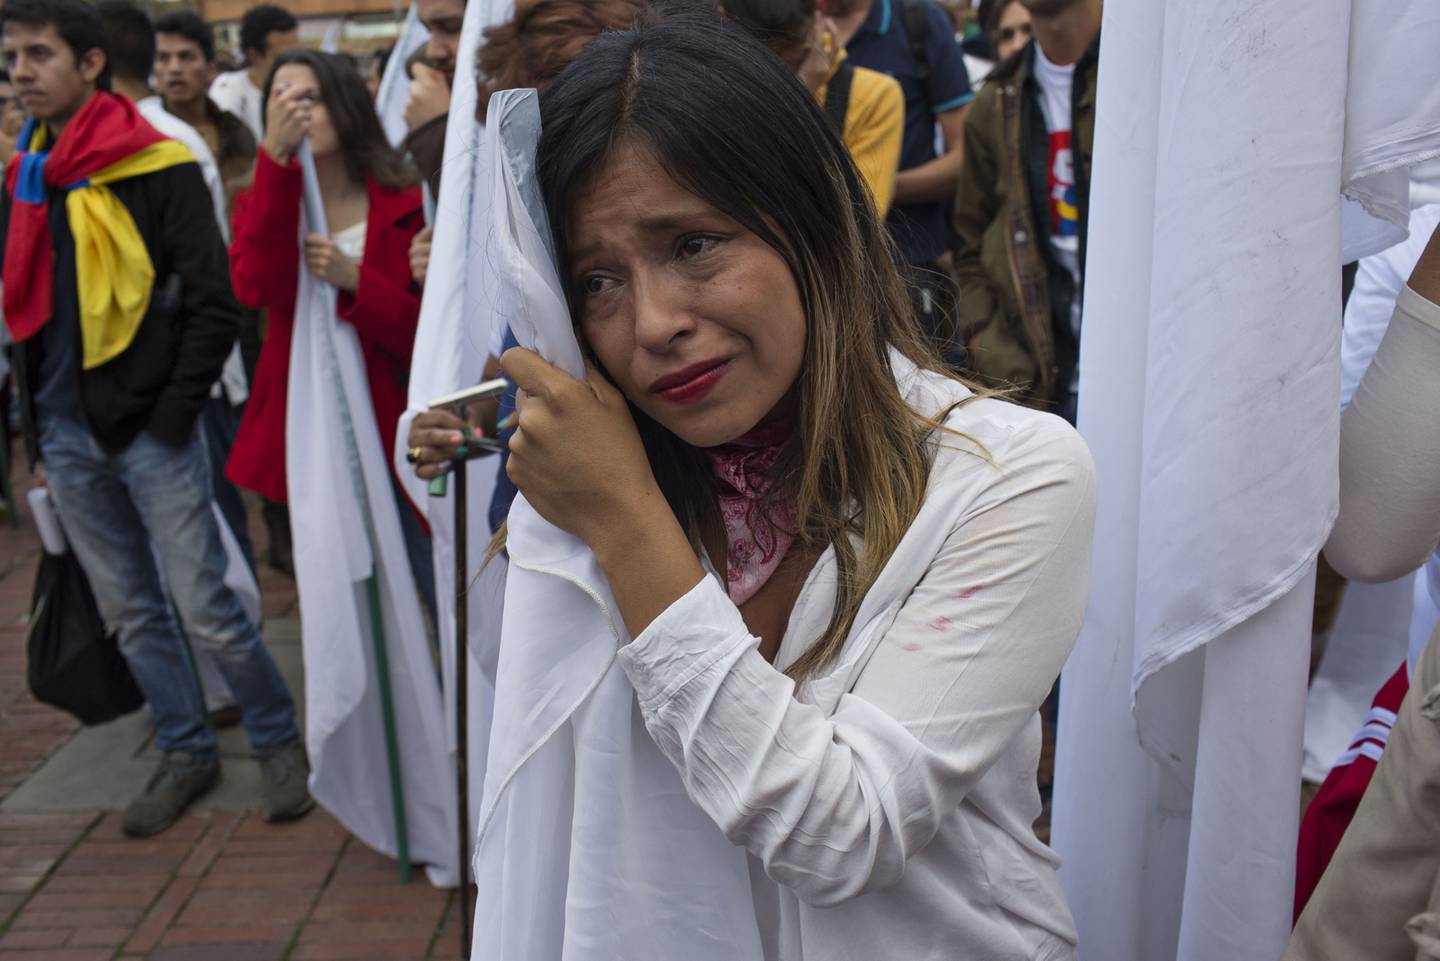 Una mujer reacciona luego de enterarse del rechazo a un acuerdo de paz con las Fuerzas Armadas Revolucionarias de Colombia (FARC) luego de un plebiscito en Bogotá, Colombia, el domingo 2 de octubre de 2016.dfd